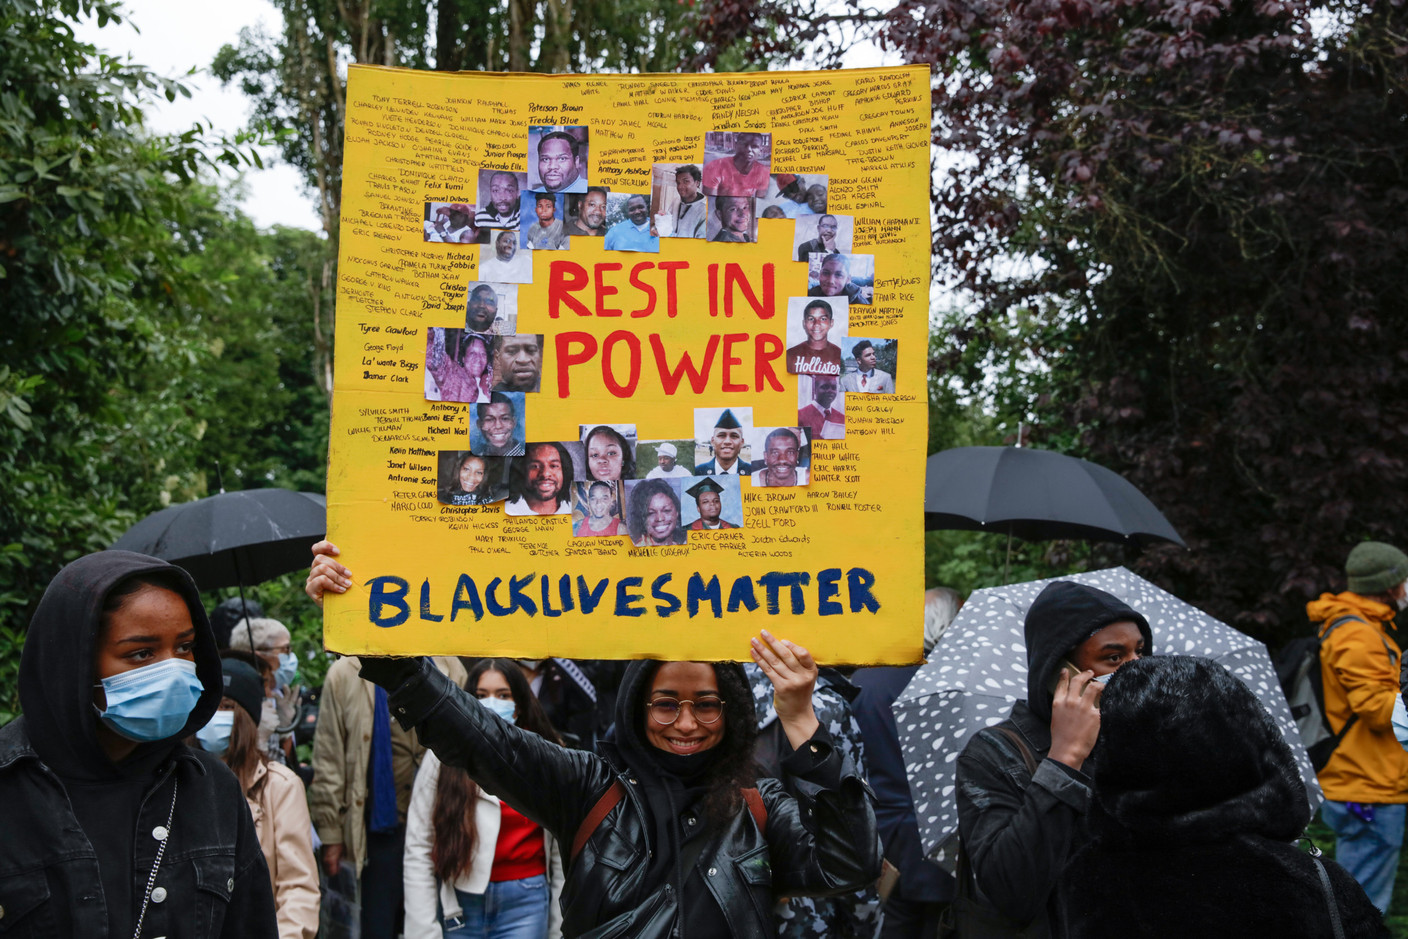 Une manifestation devant l'ambassade des États-Unis à Luxembourg pour dénoncer le racisme et réclamer plus de justice après la mort de George Floyd. Romain Gamba / Maison Moderne